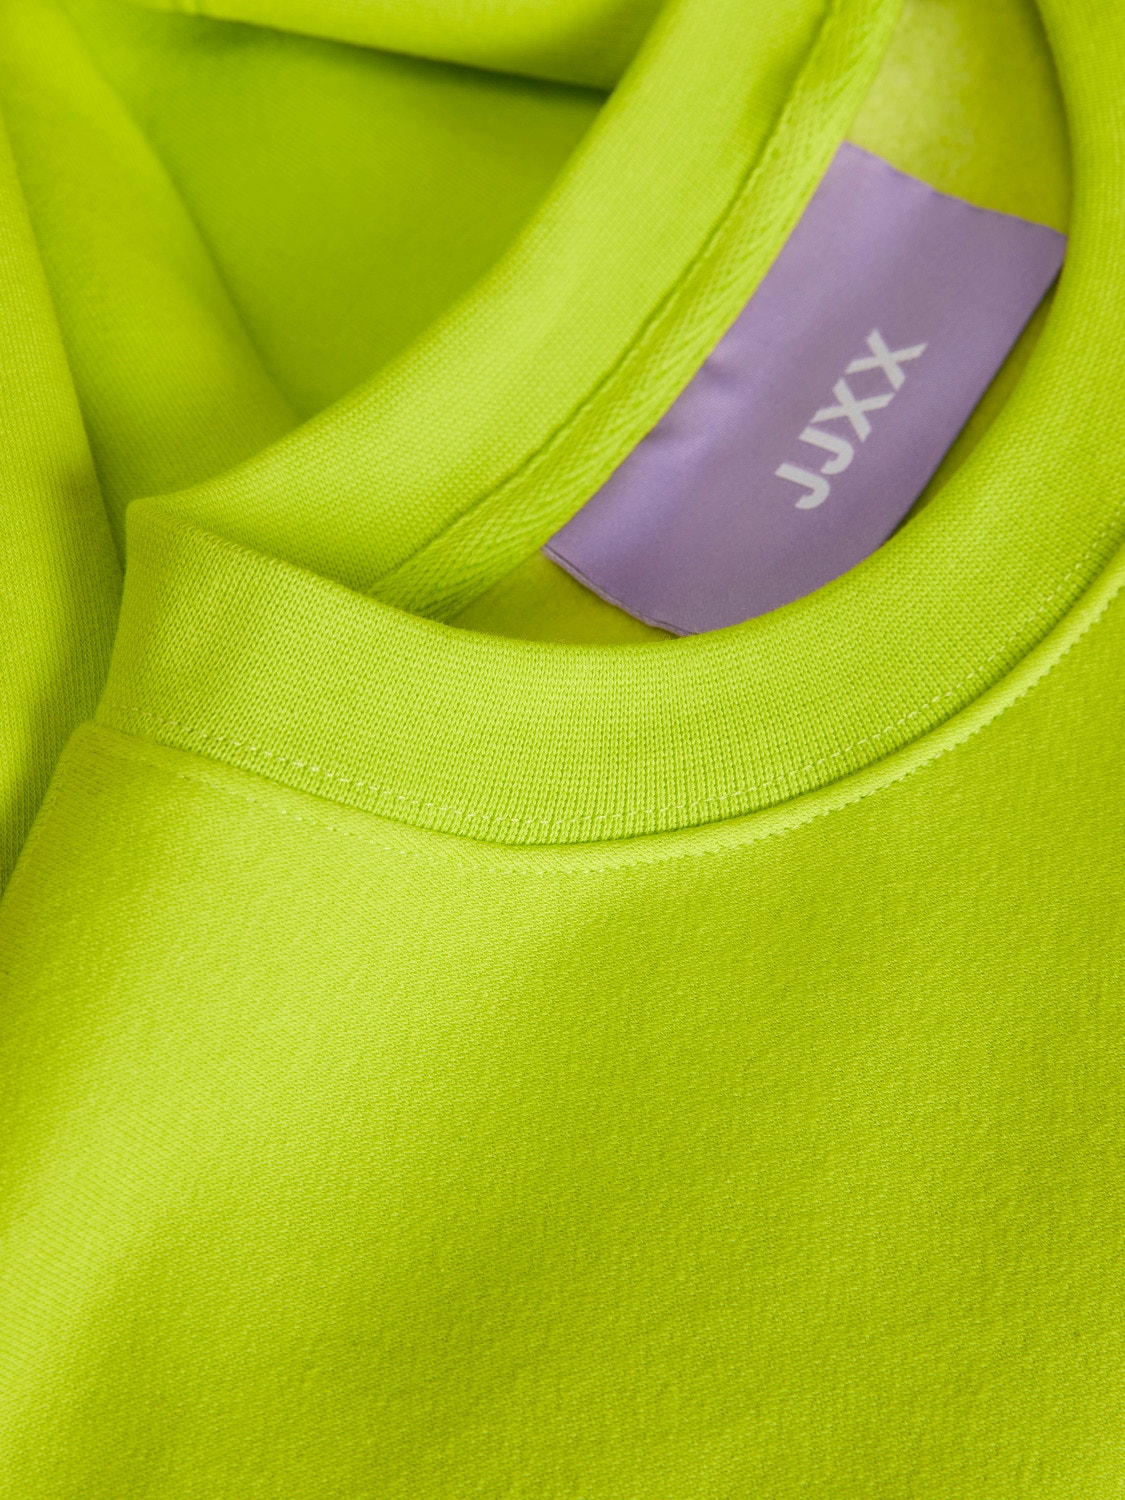 JJXX JXABBIE Sweatshirt met ronde hals -Lime Punch - 12214536